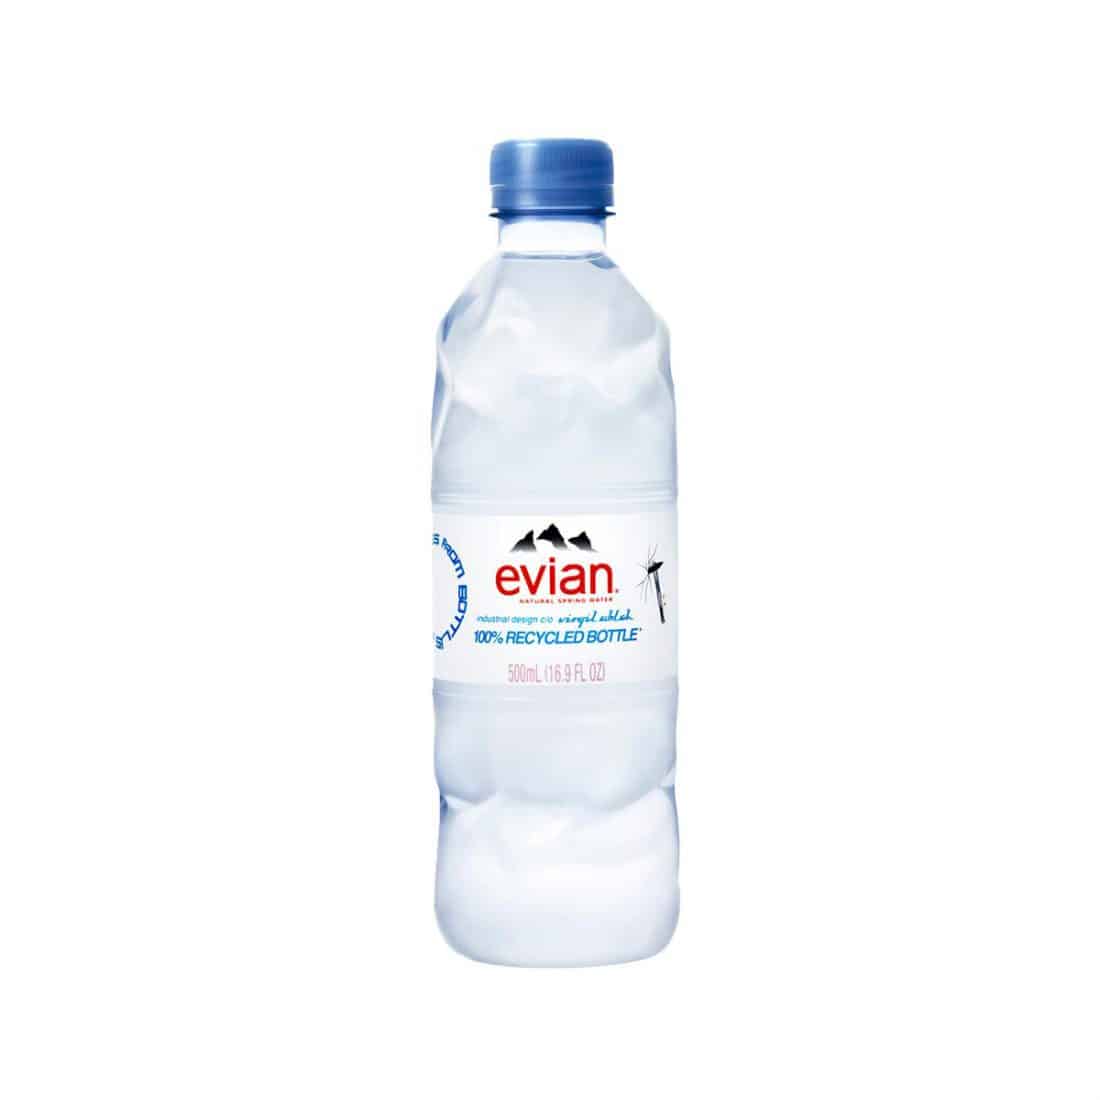 Virgil Abloh a conçu la nouvelle bouteille 100% recyclée d’Evian